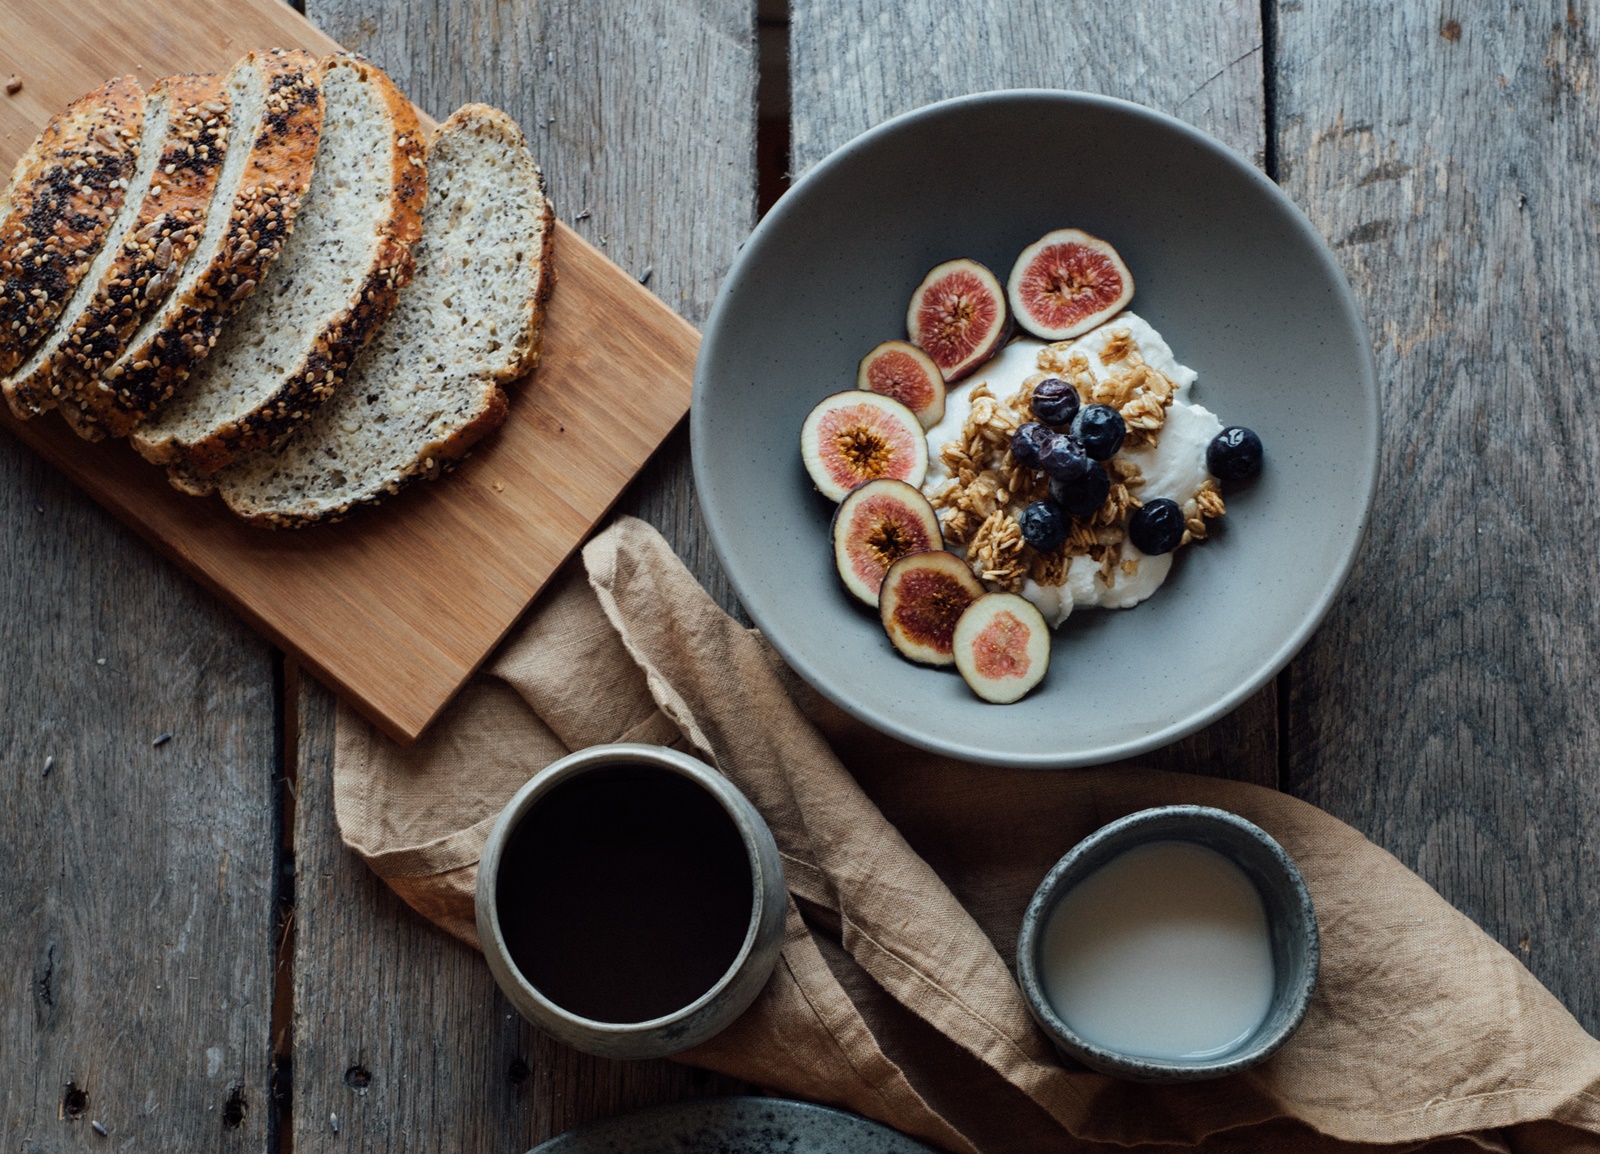 Σνακ με γιαούρτι: Μια τέλεια ιδέα για σένα που κάνεις διατροφή